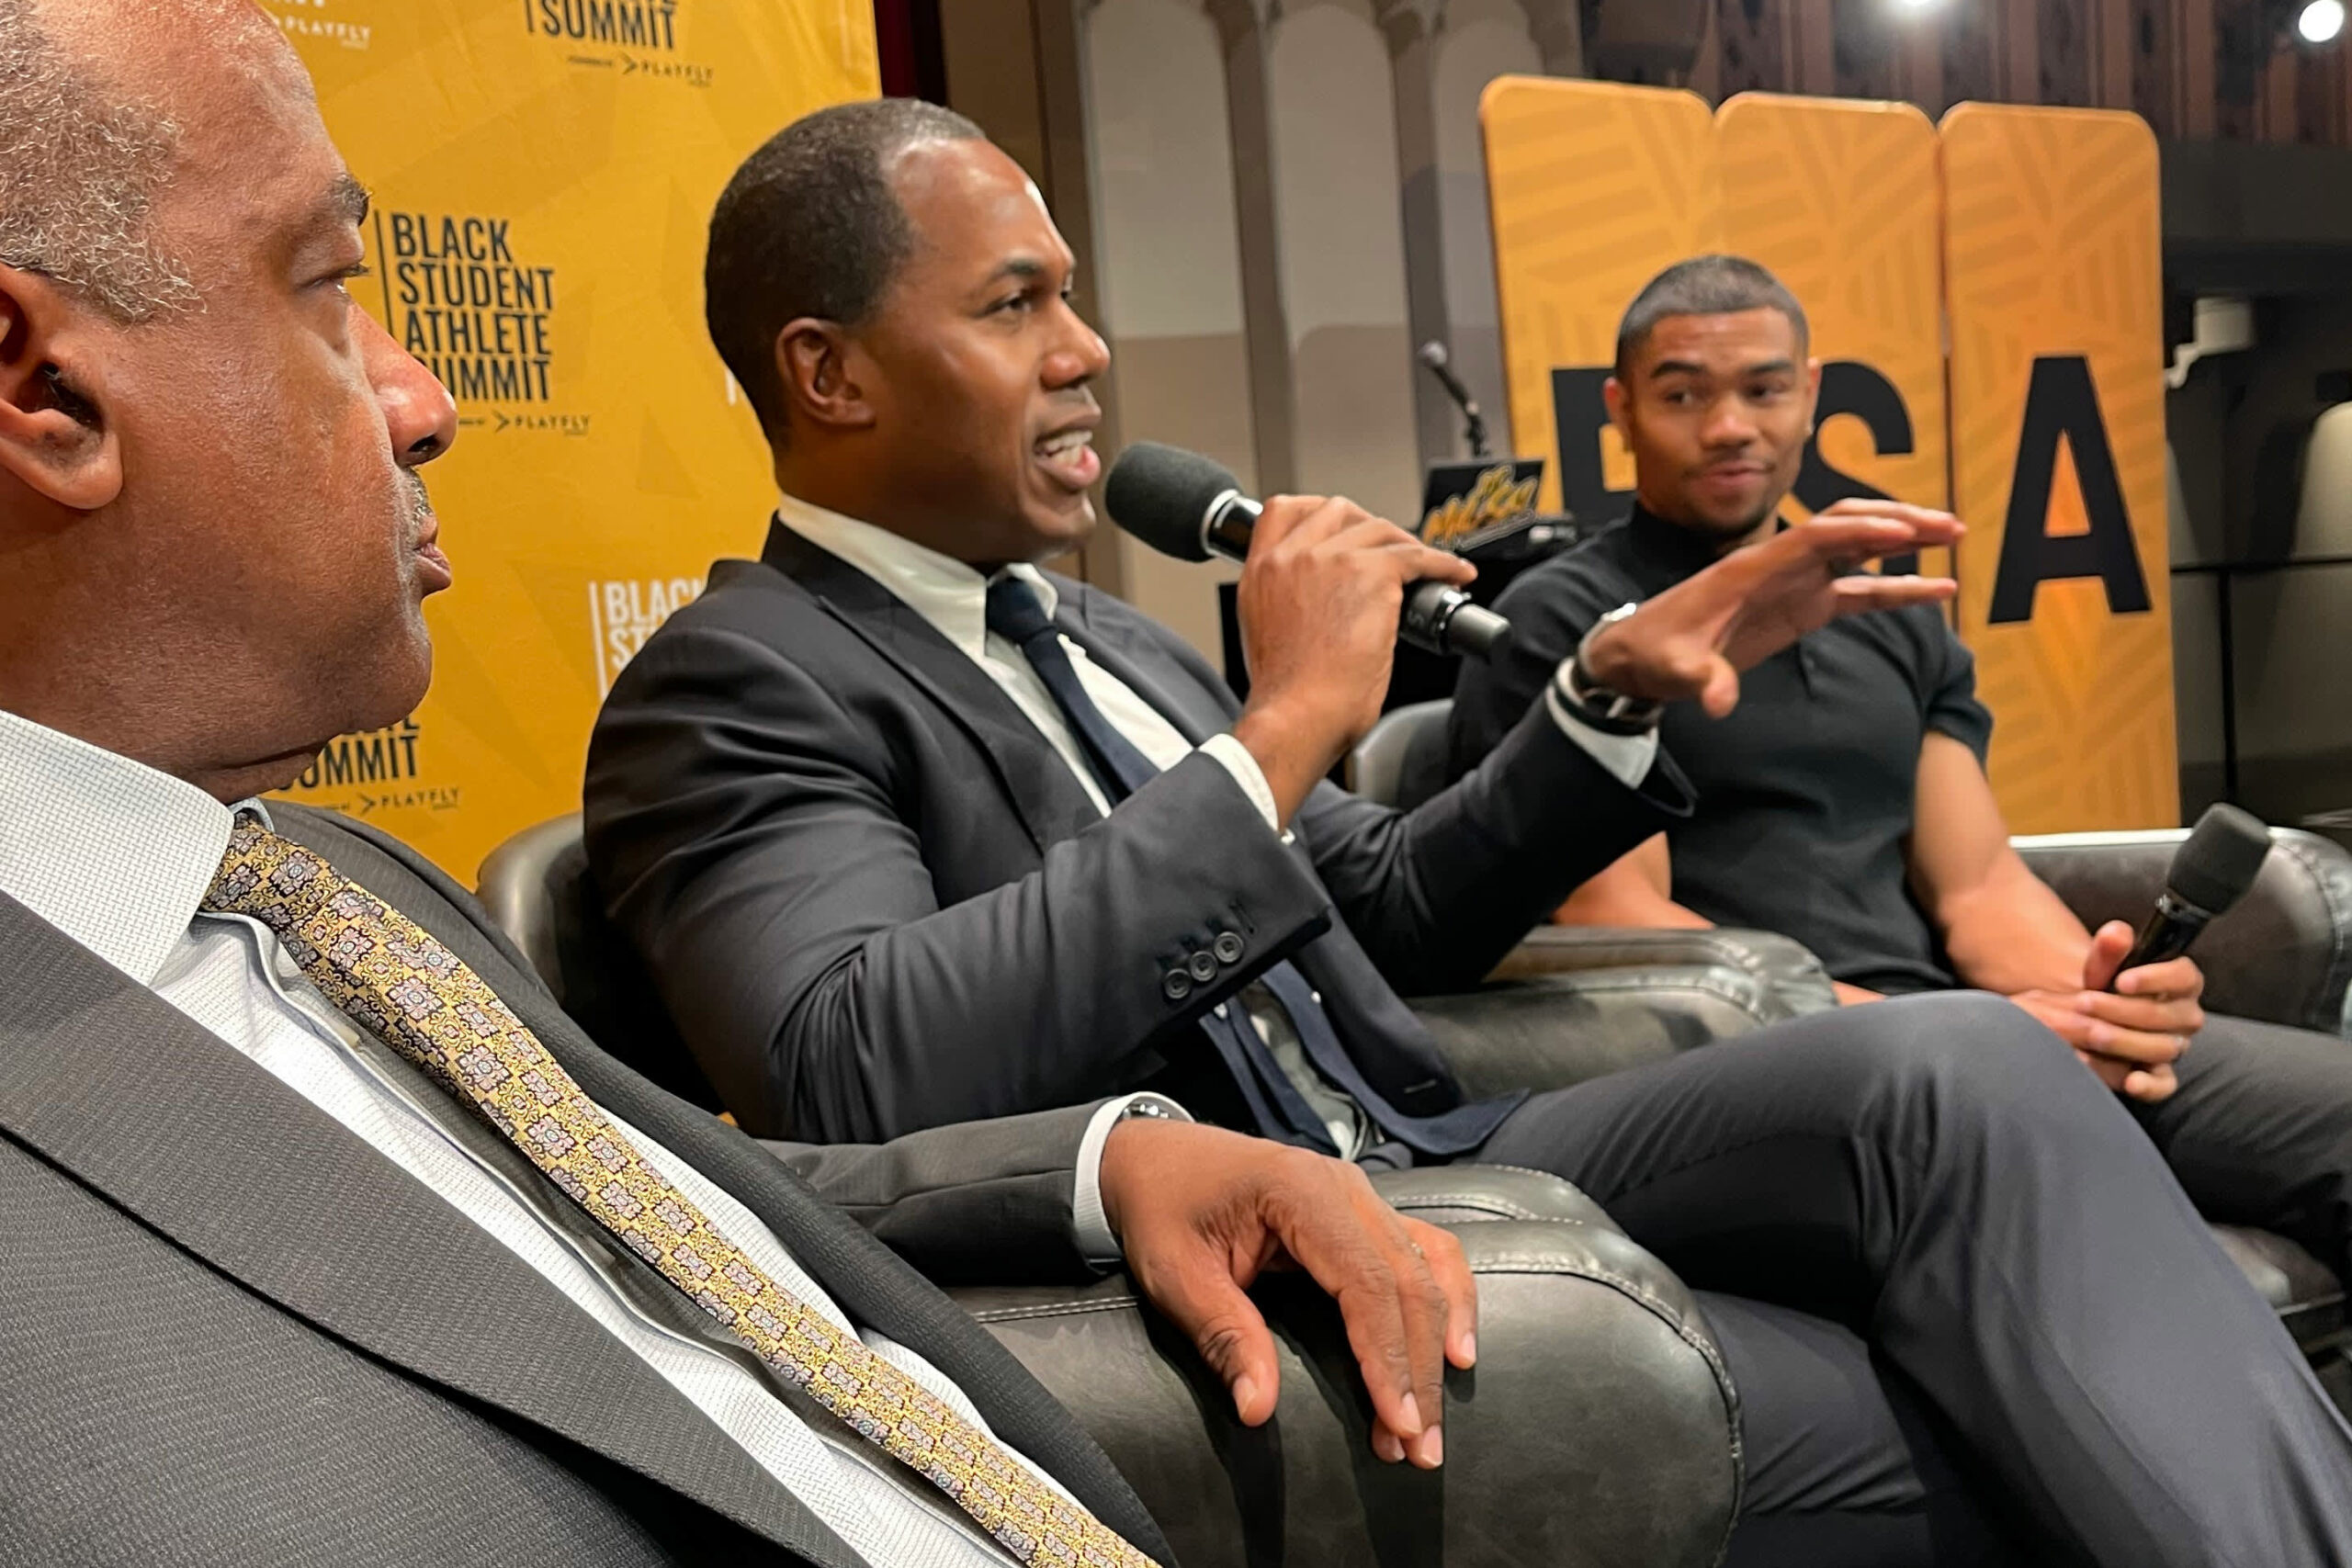 Waarom grote commerciële vastgoedbedrijven hun krachten bundelen om zwarte student-atleten te rekruteren